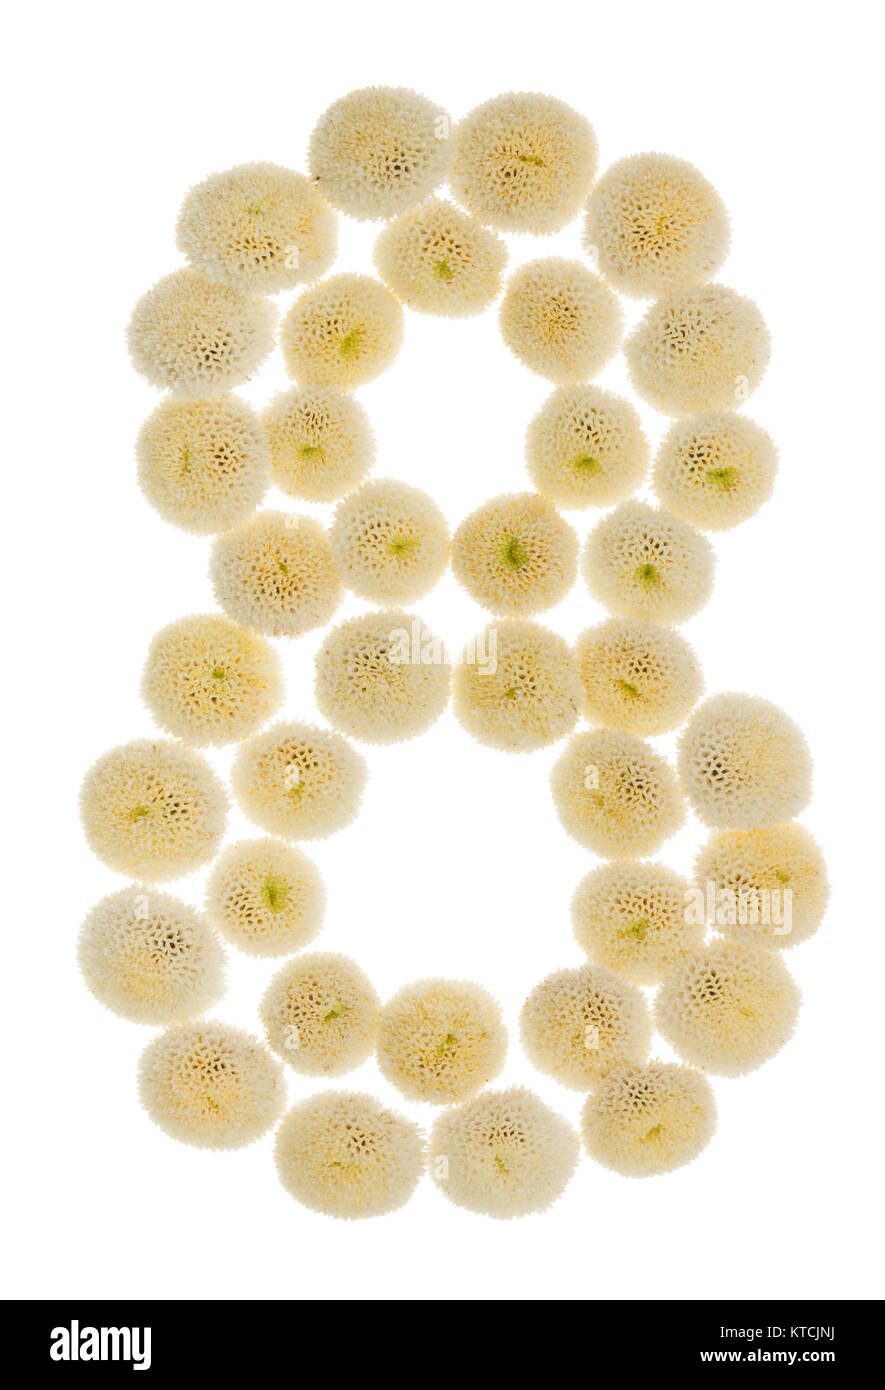 Chiffre arabe 8, huit, à partir de crème fleurs de chrysanthème, isolé sur fond blanc Banque D'Images